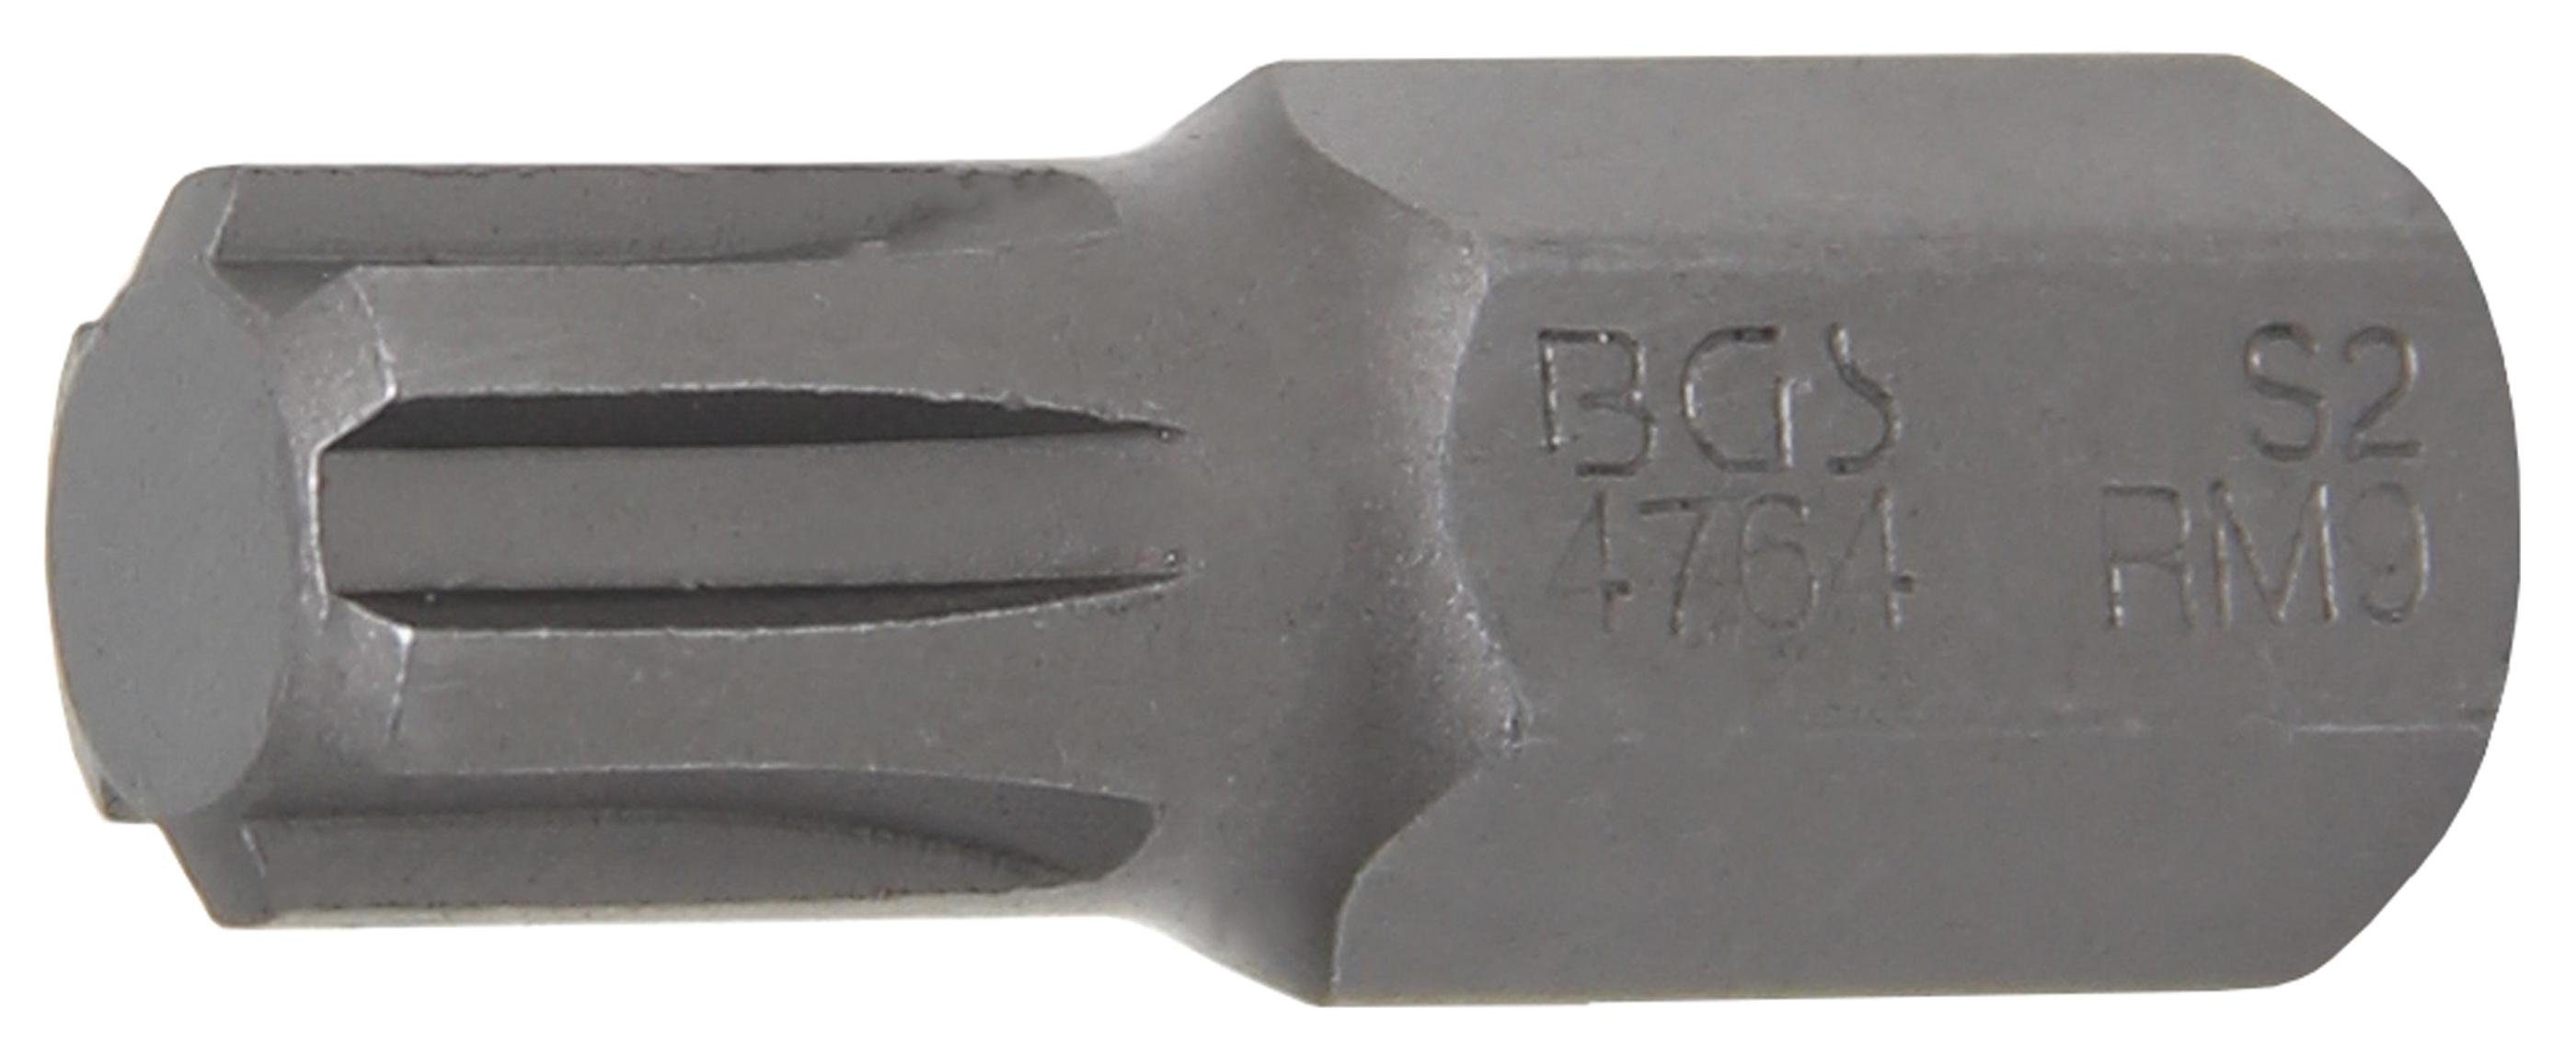 BGS technic Bit-Schraubendreher Bit, Antrieb Außensechskant 10 mm (3/8), Keil-Profil (für RIBE) M9